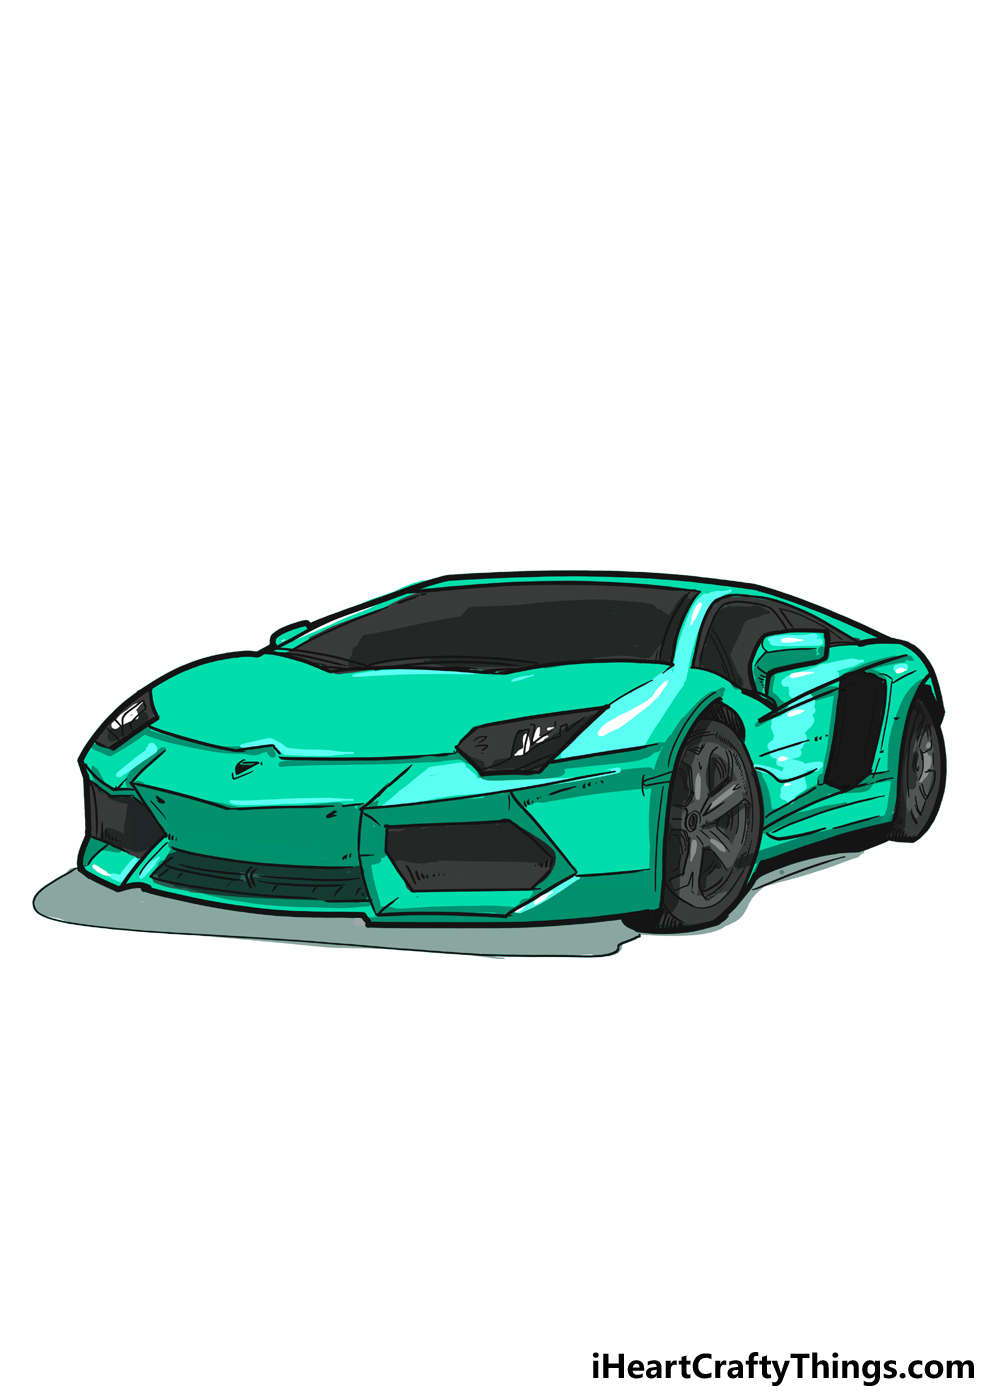 Design and Style | Lamborghini.com